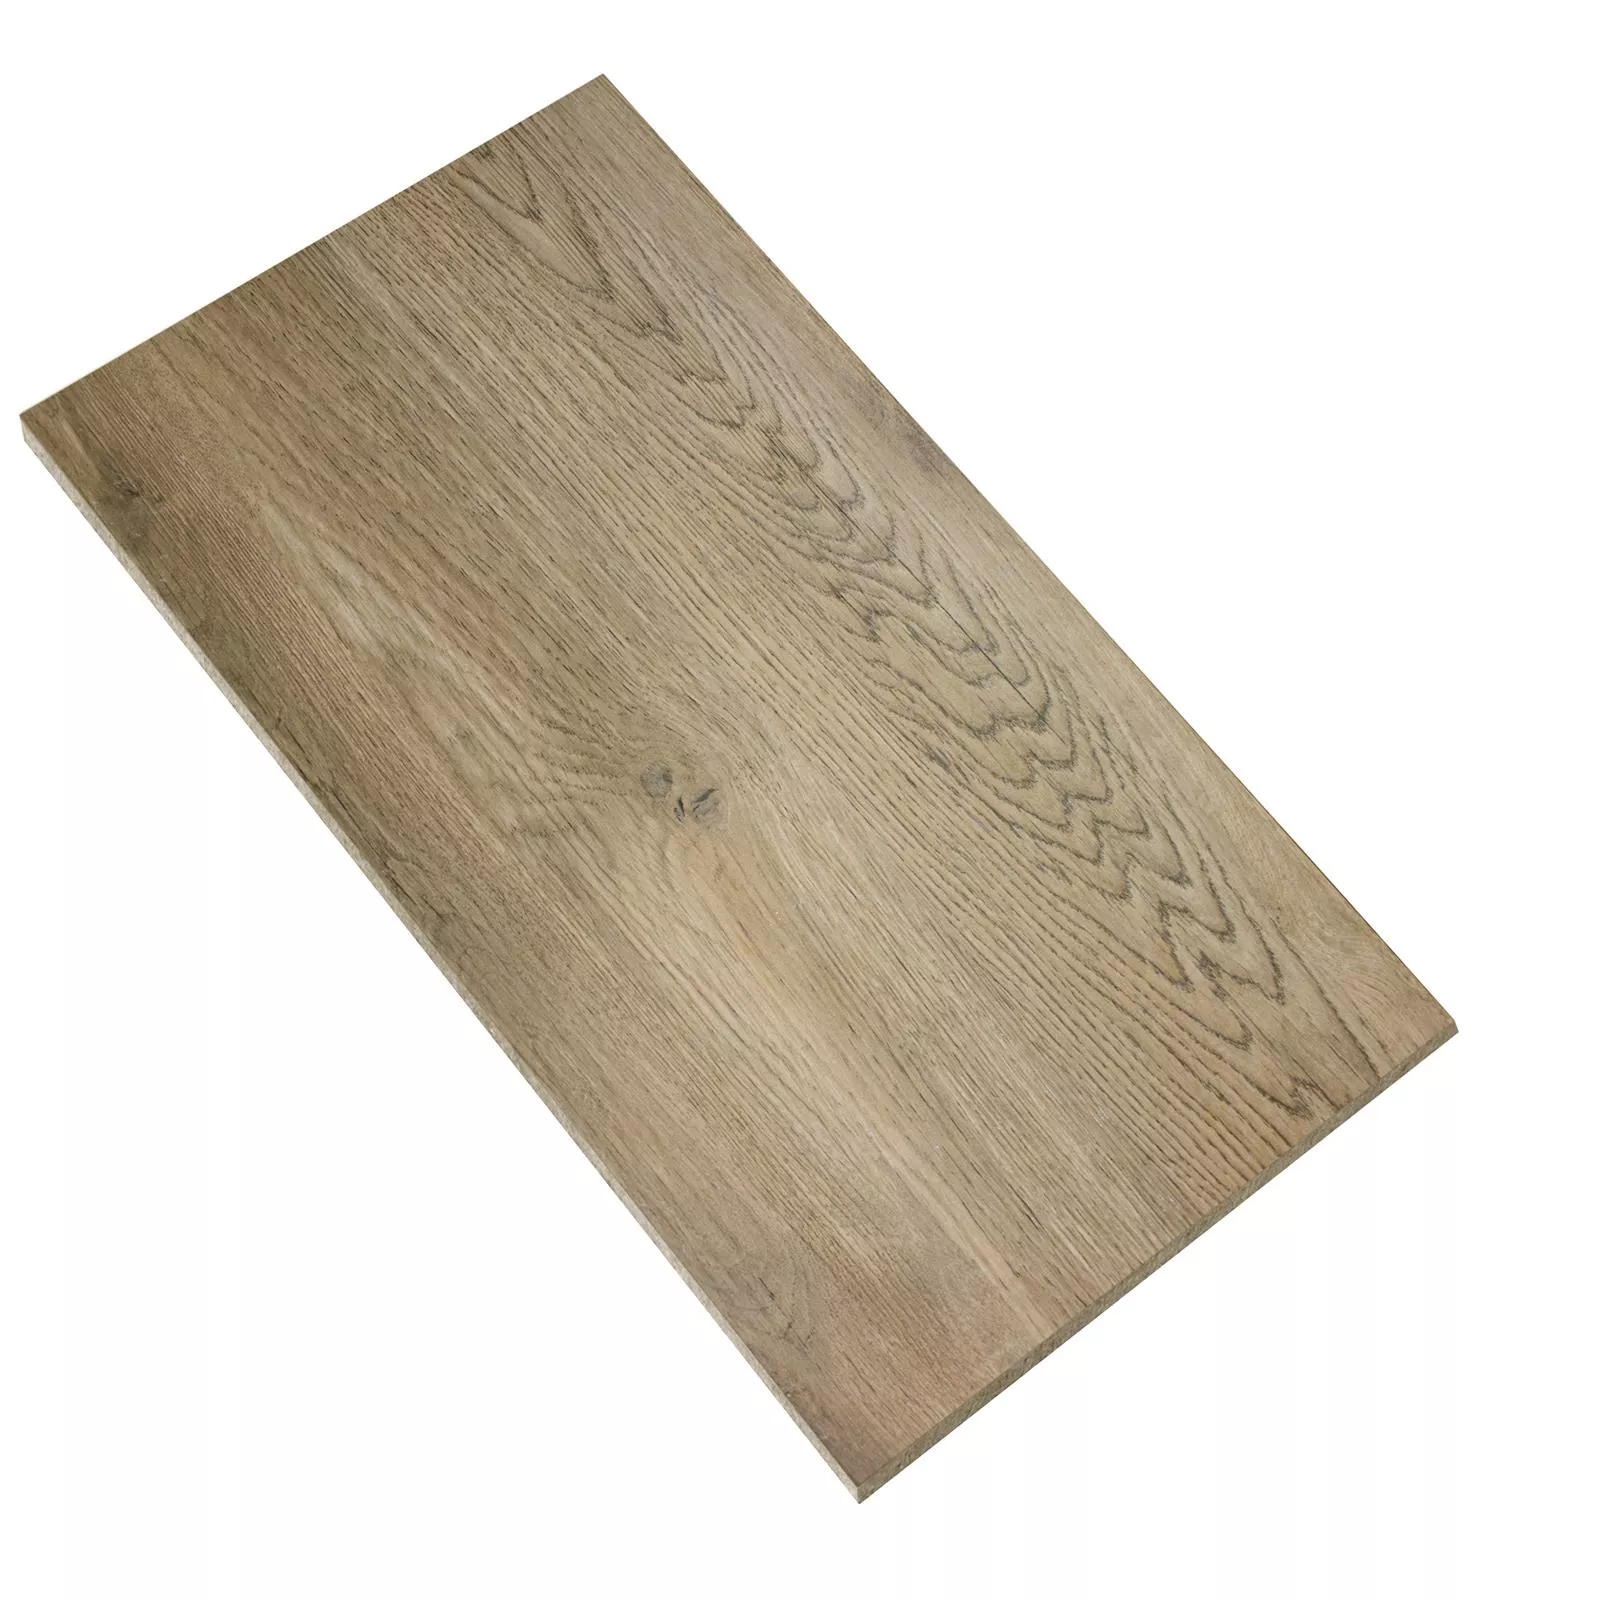 Sample Floor Tiles Wood Optic Alexandria Dark Beige 30x60cm